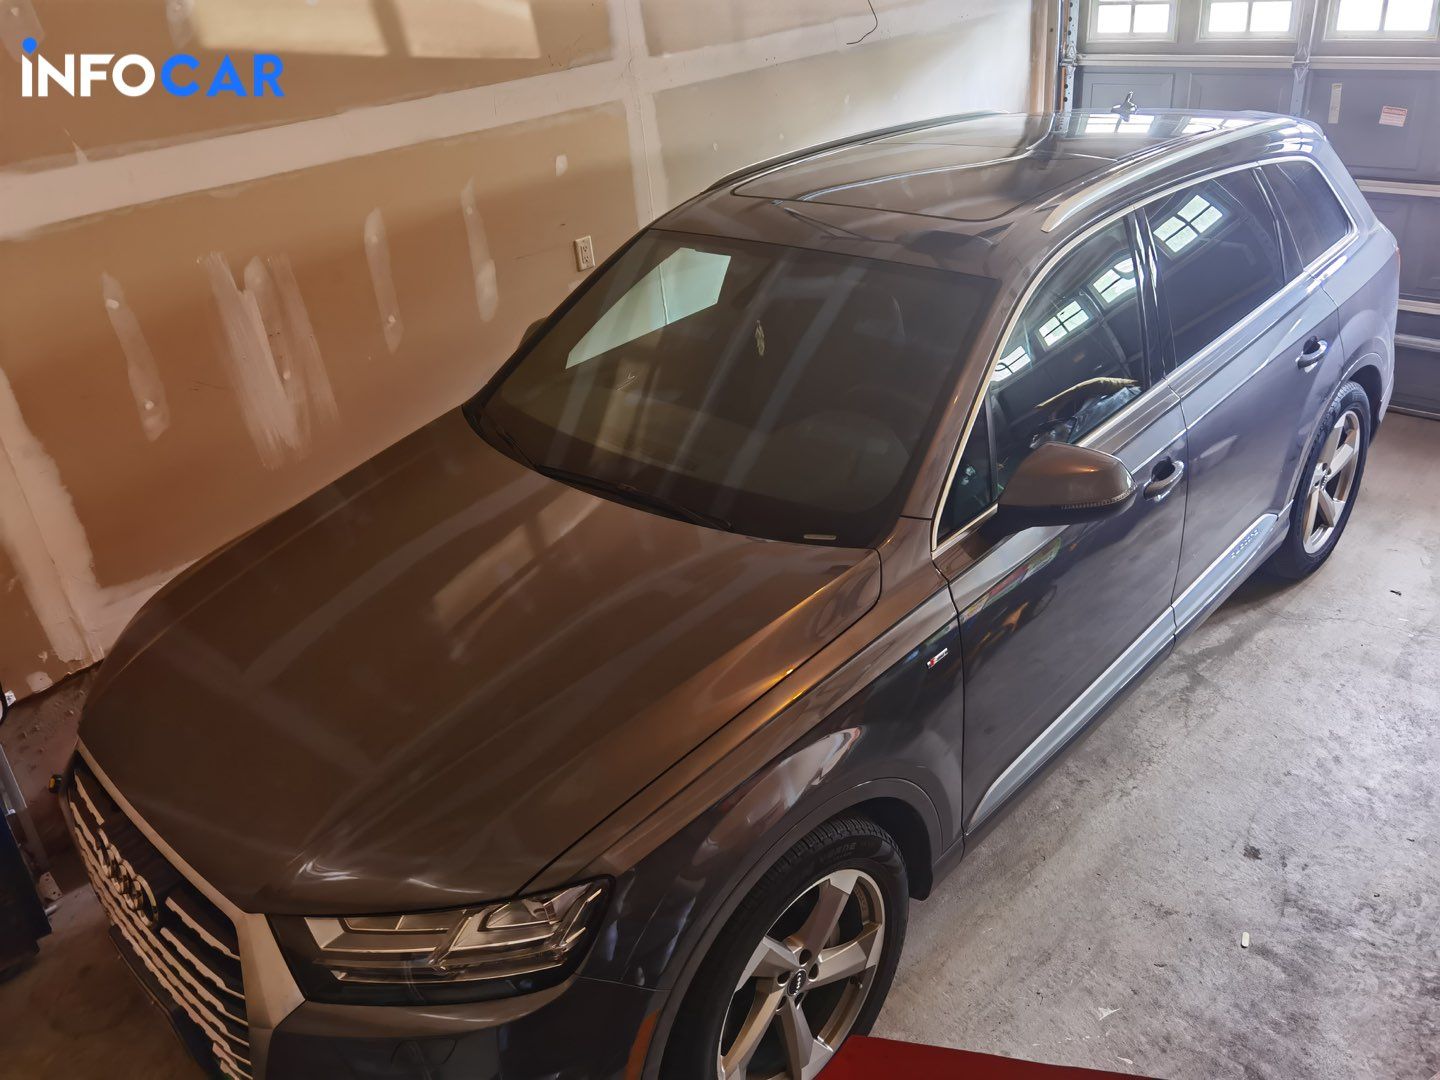 2018 Audi Q7 technik - INFOCAR - Toronto Auto Trading Platform